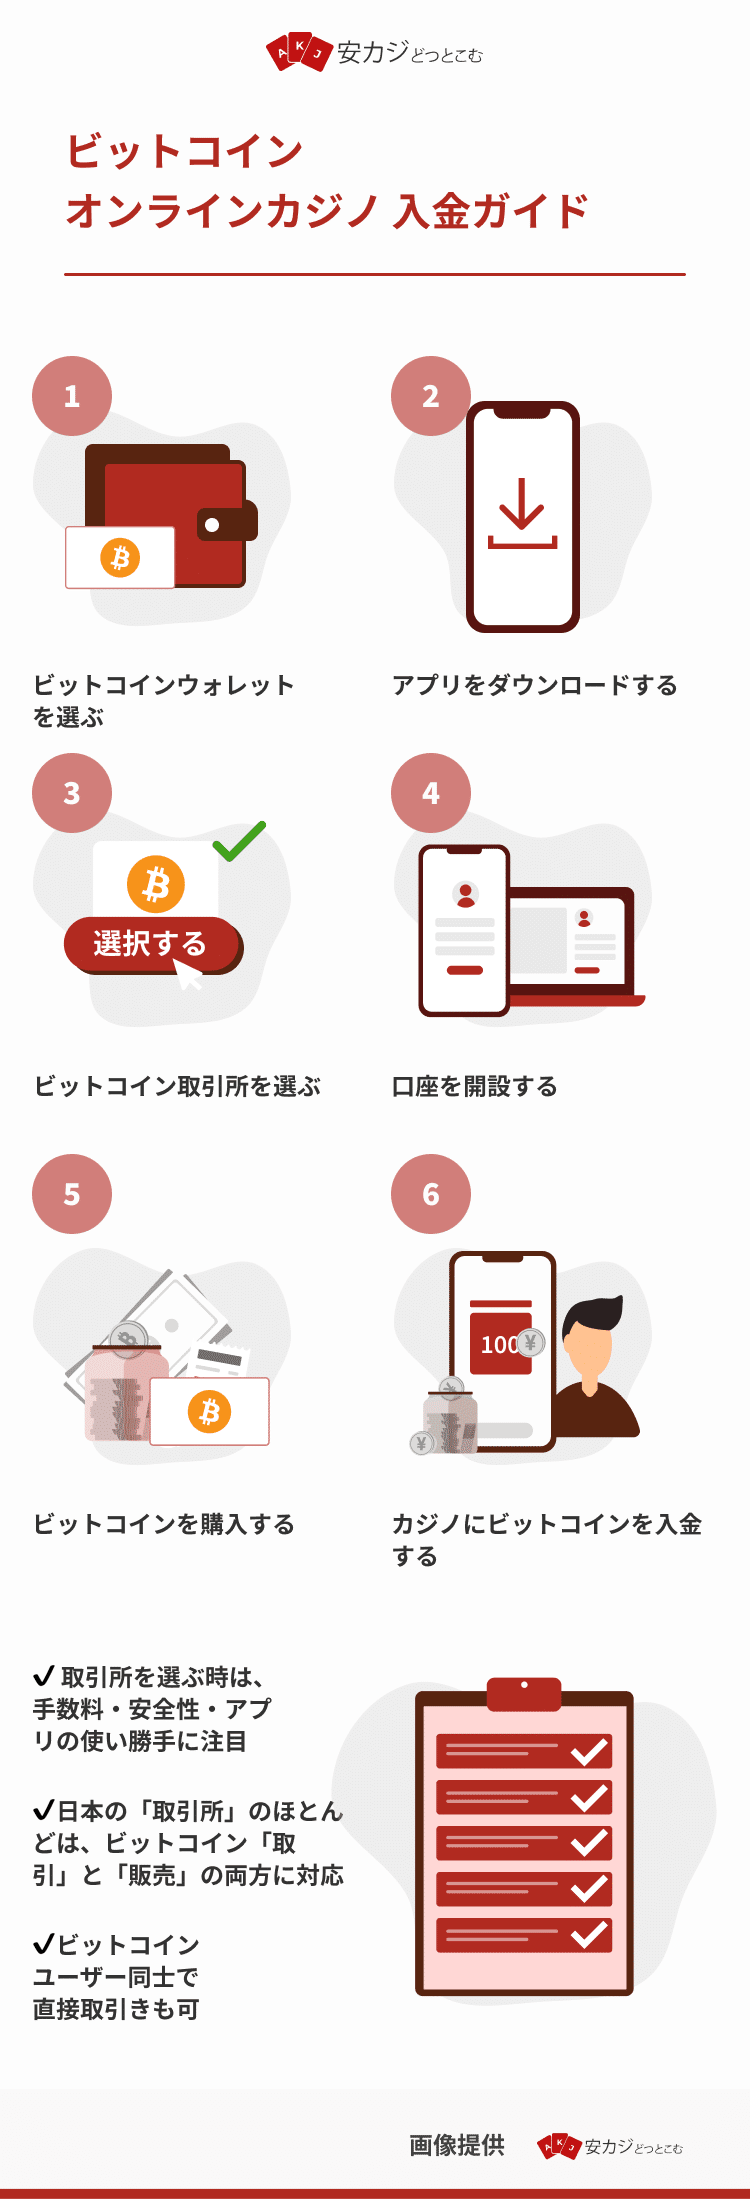 ビットコイン - オンラインカジノ入金ガイド